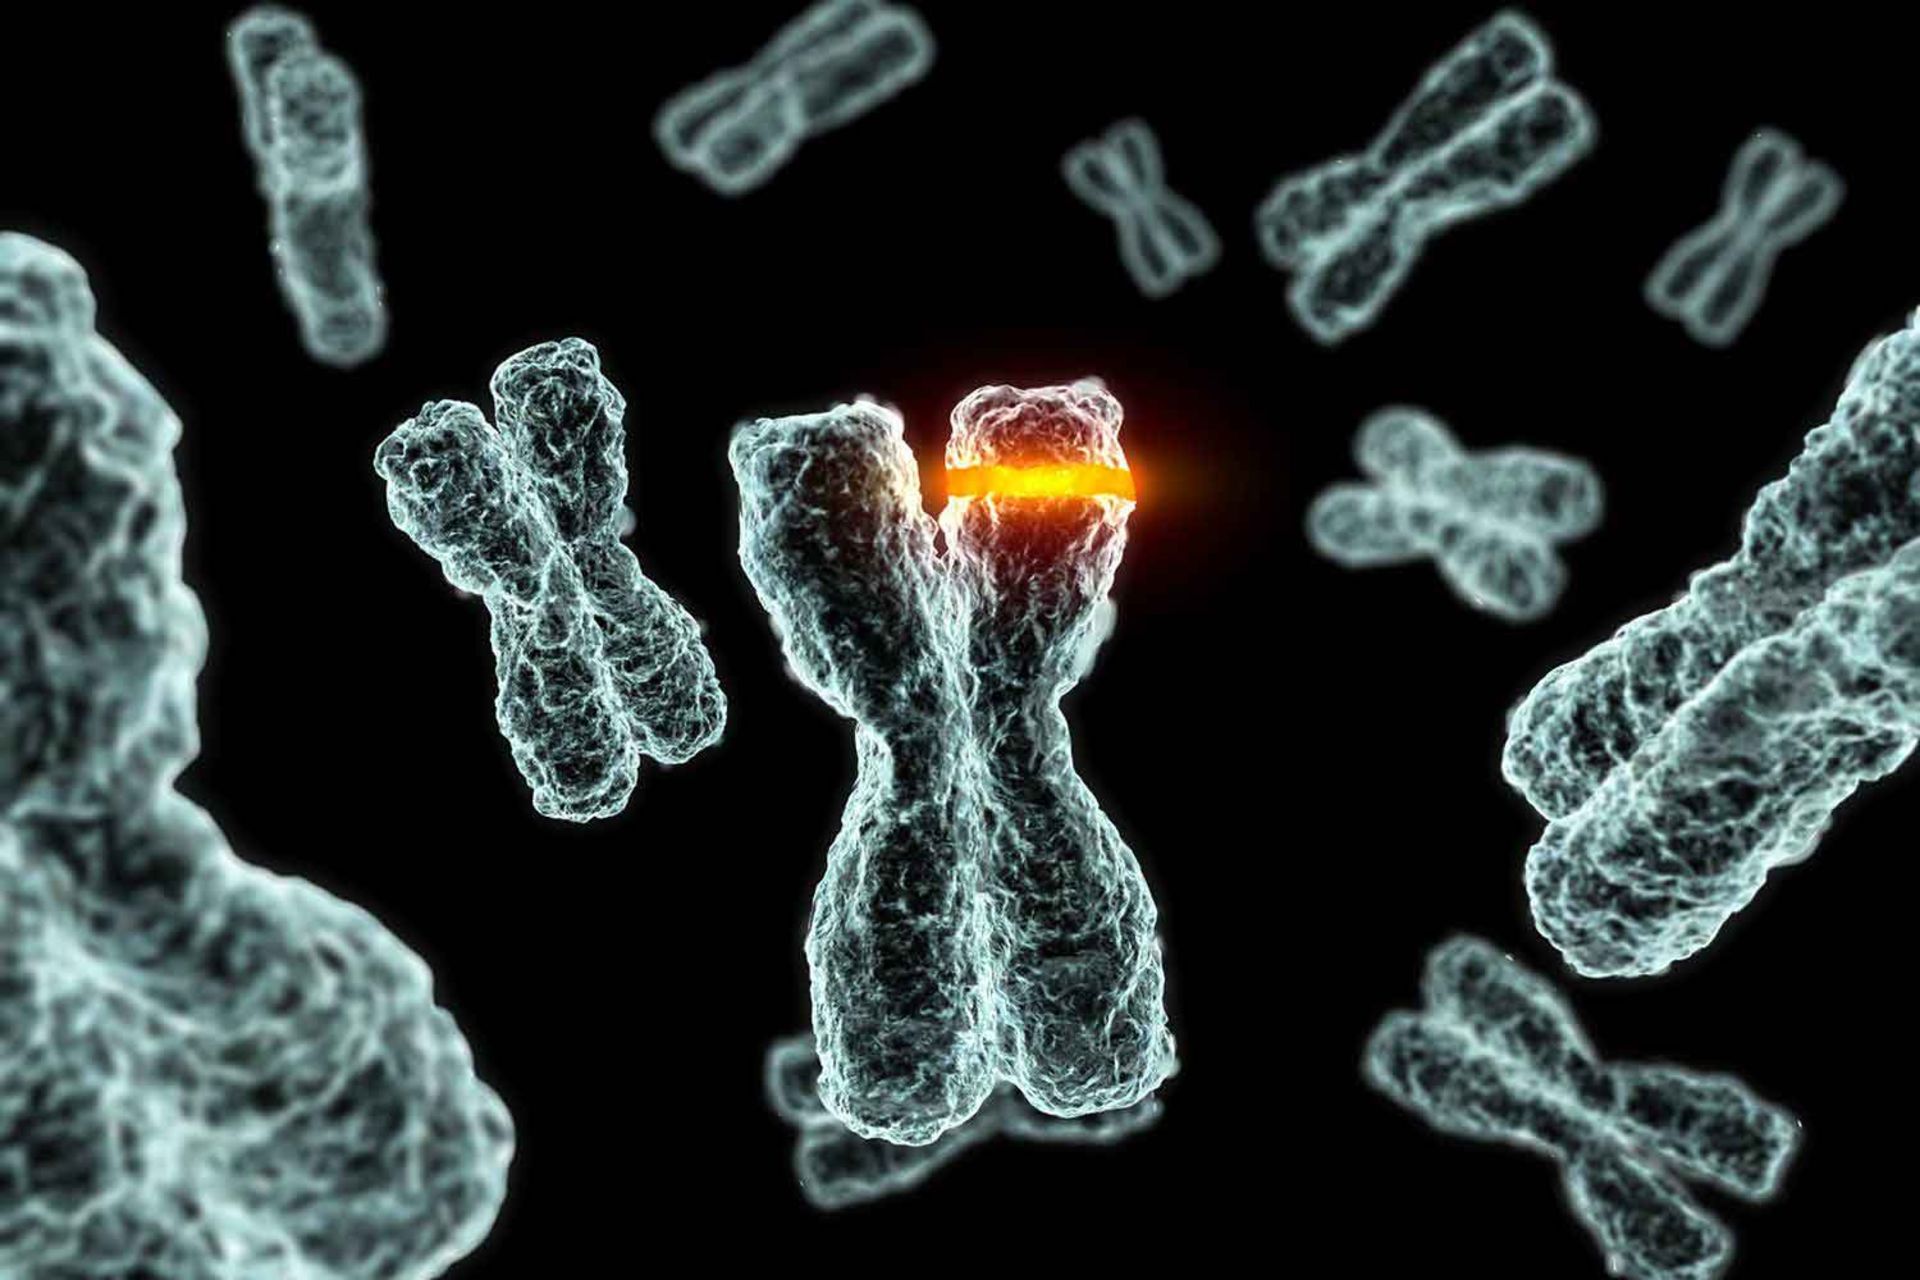 مرجع متخصصين ايران كروموزم / Chromosome